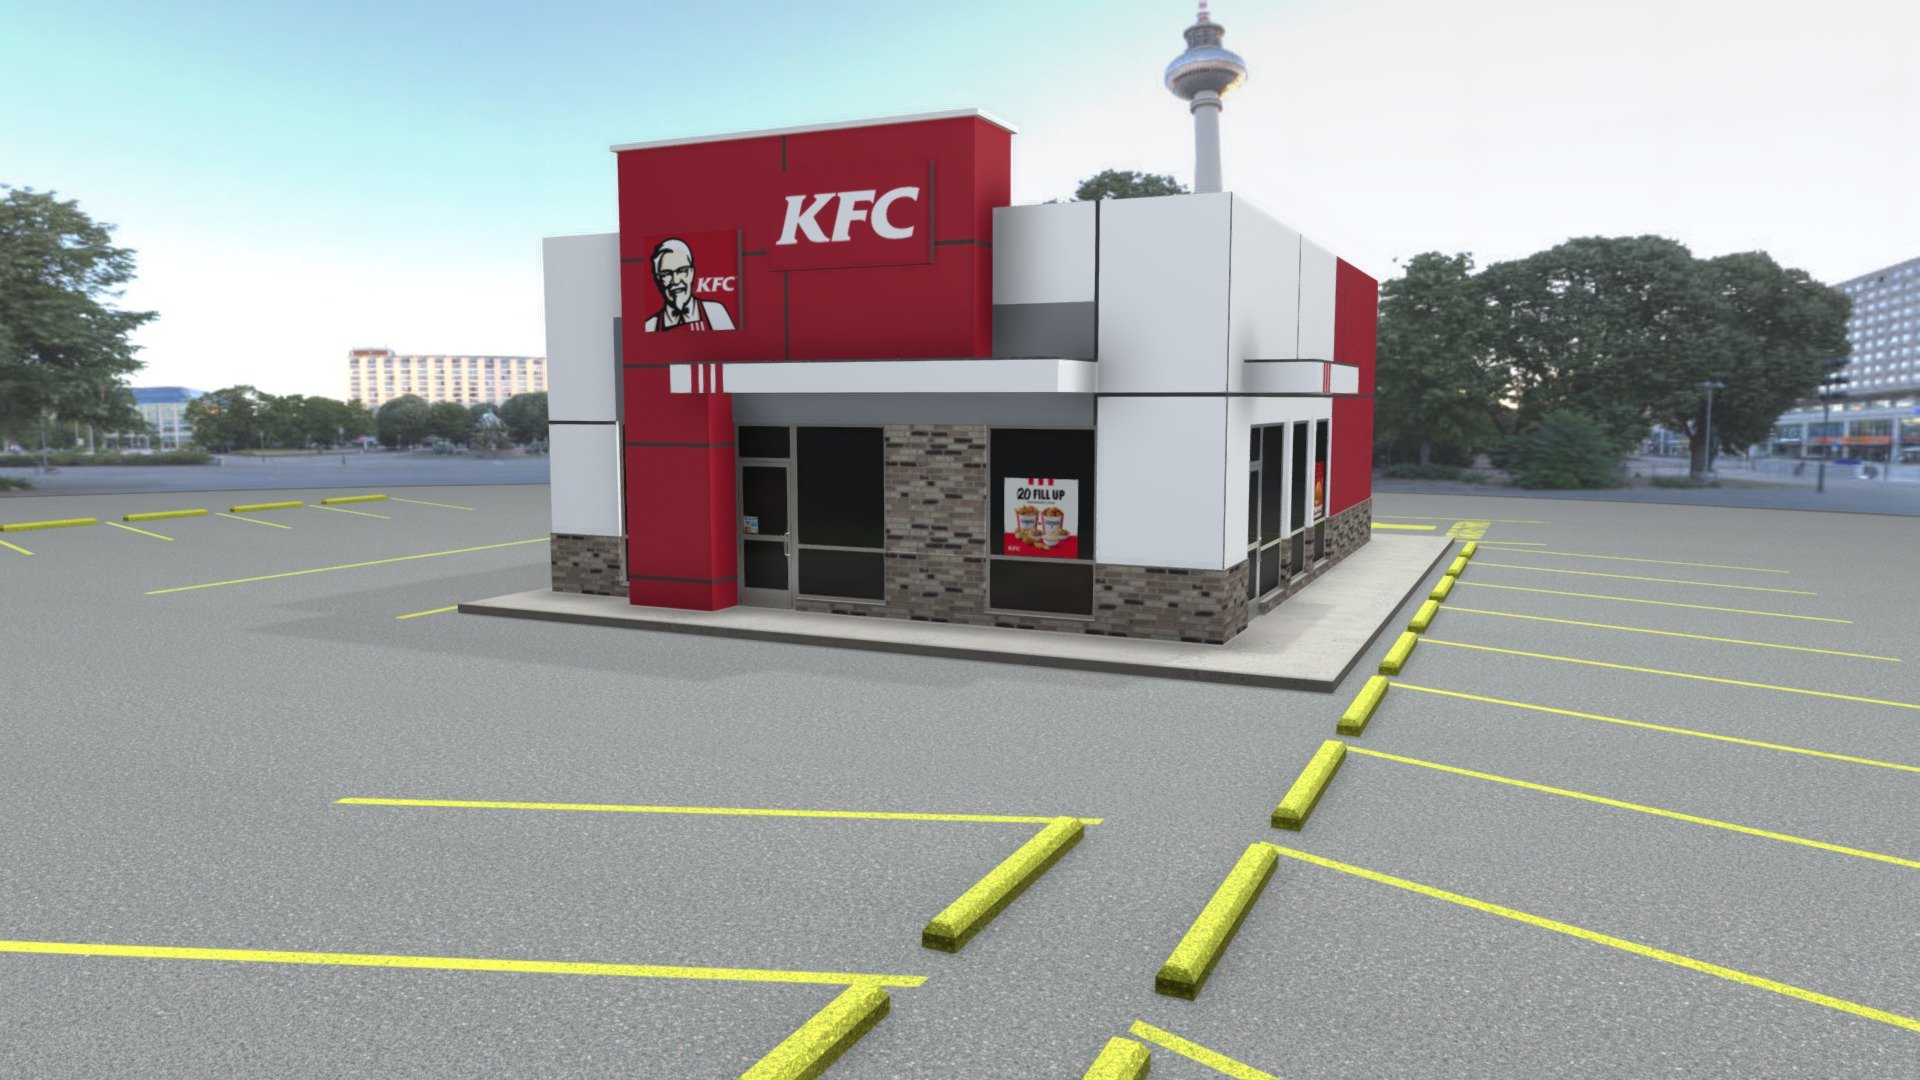 Kentucky Fried Chicken Restaurant - Kentucky Fried Chicken Restaurant - Buy Royalty Free 3D model by jimbogies 3d model